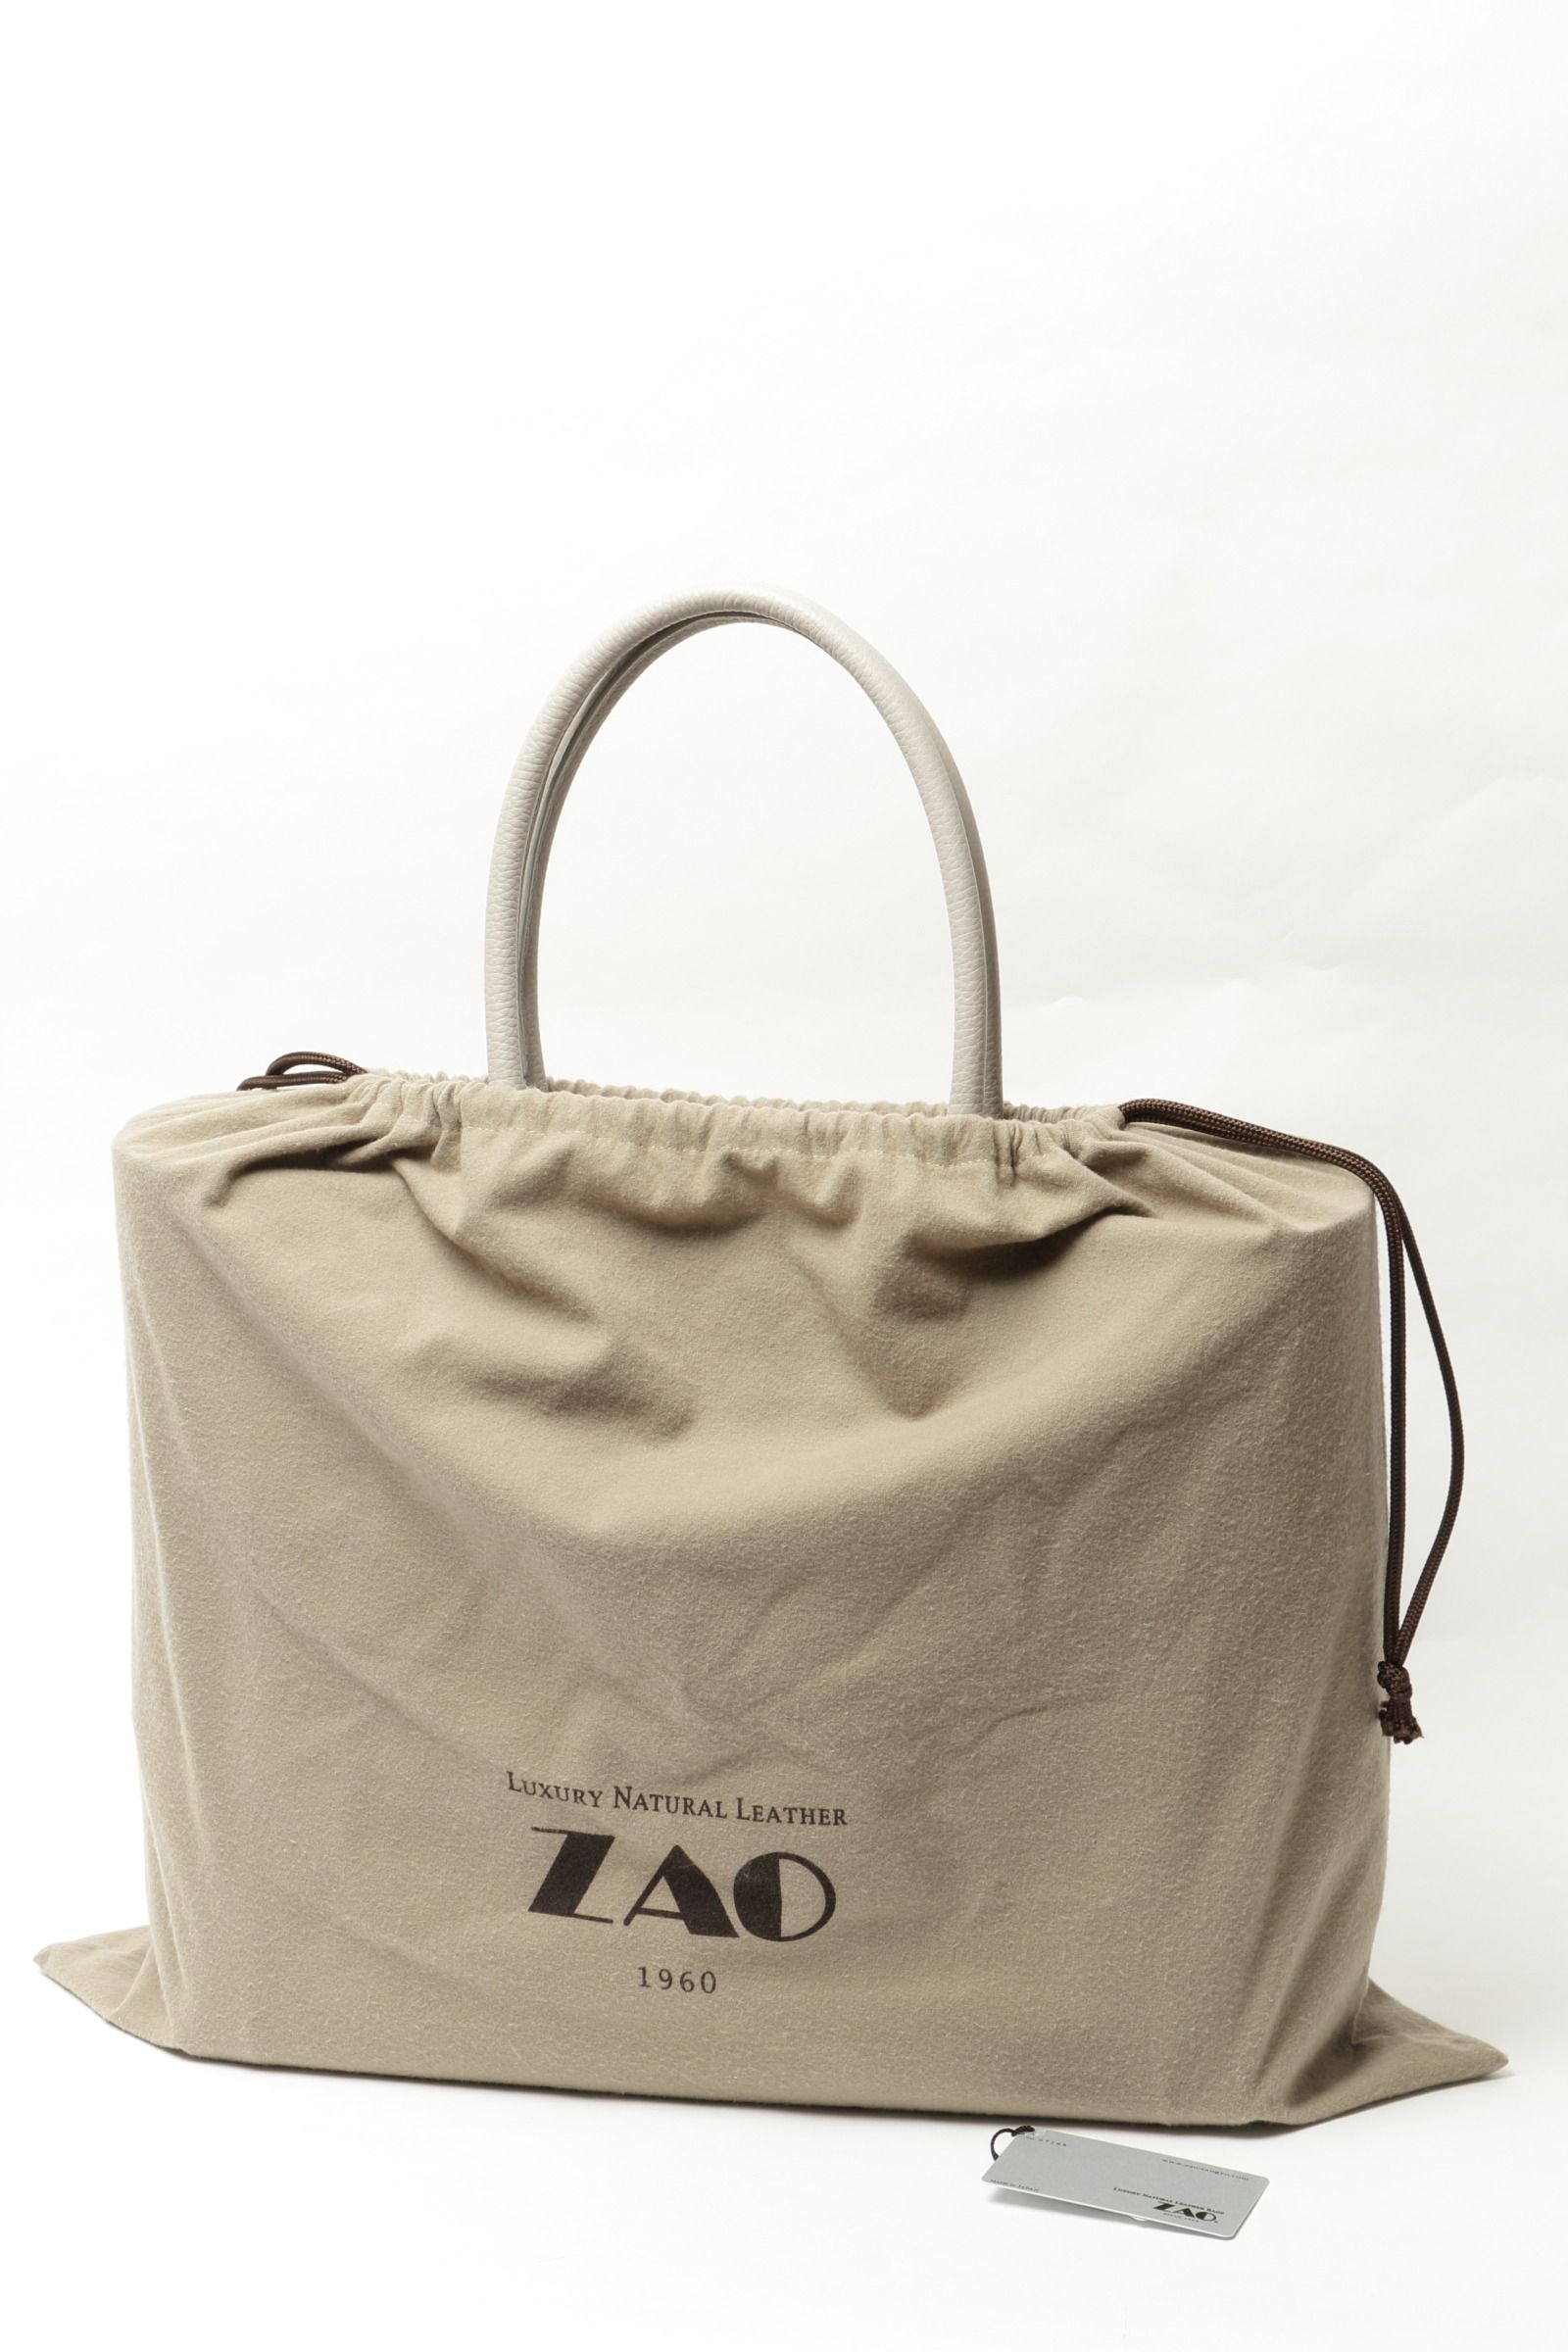 ZAO - マットラージクロコ (ノバギニア) × カーフレザー パッチワーク 